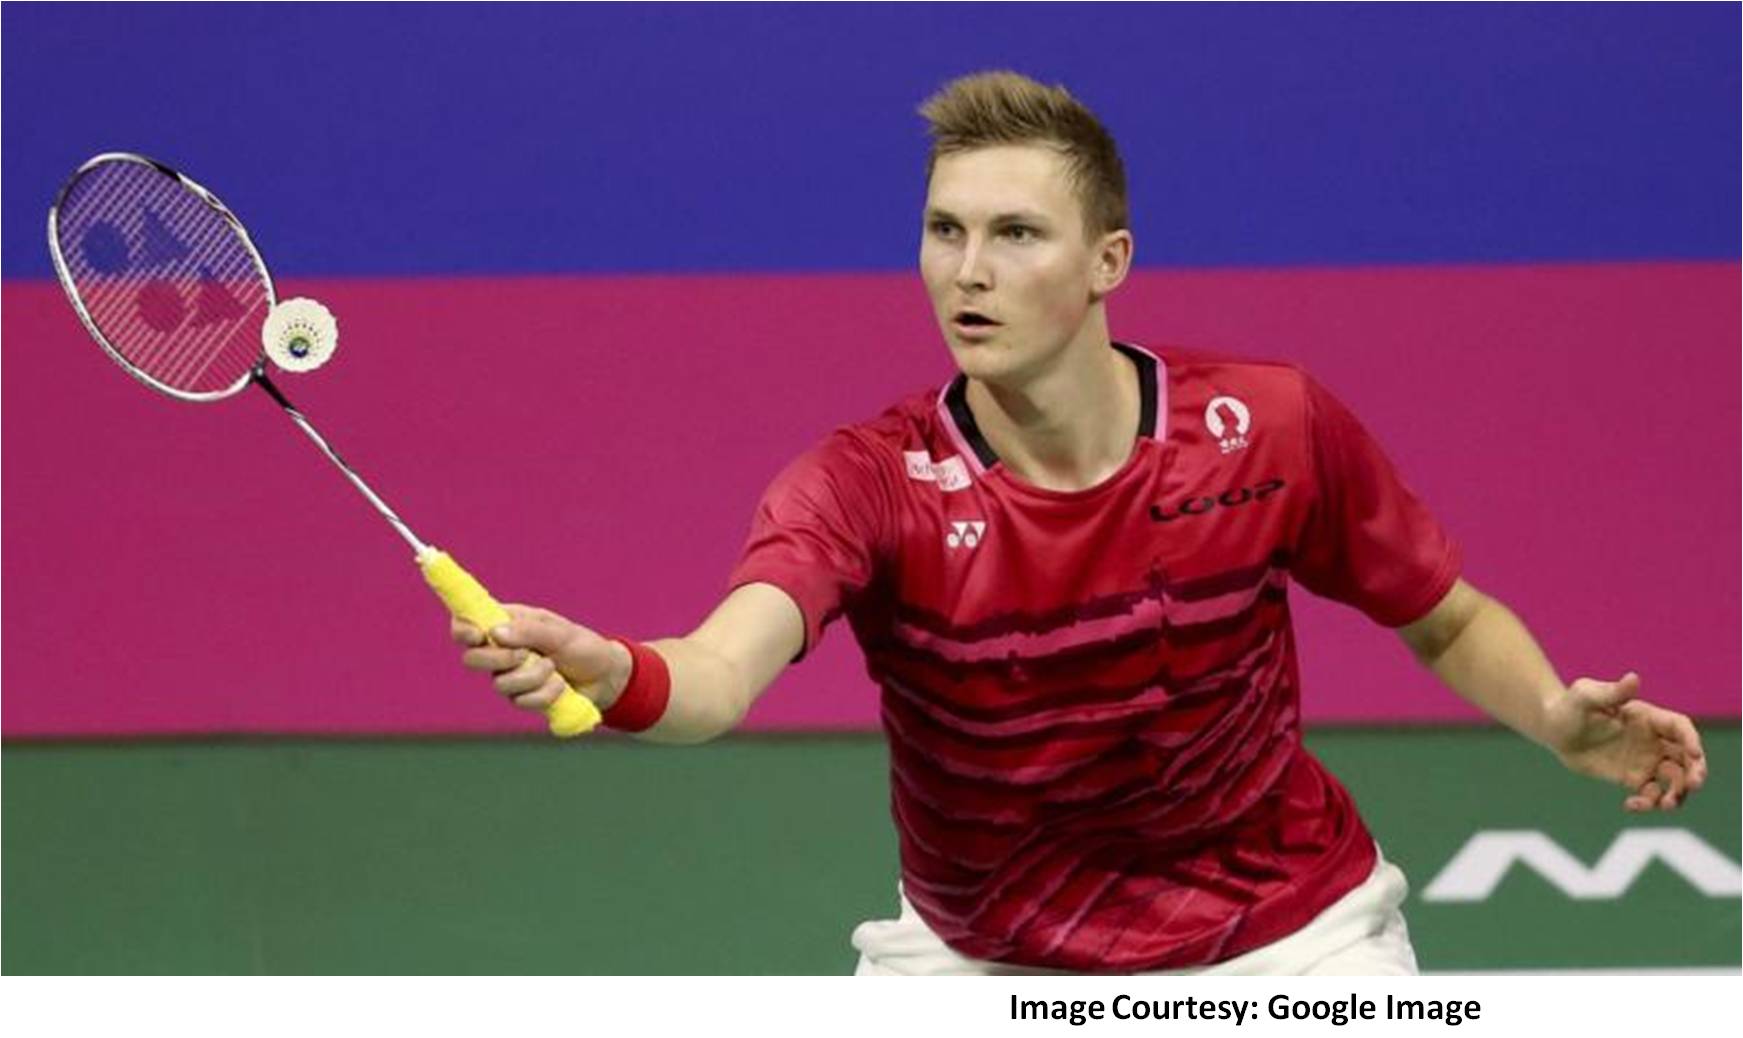 Viktor_Axelsen_Best_Badminton_Player